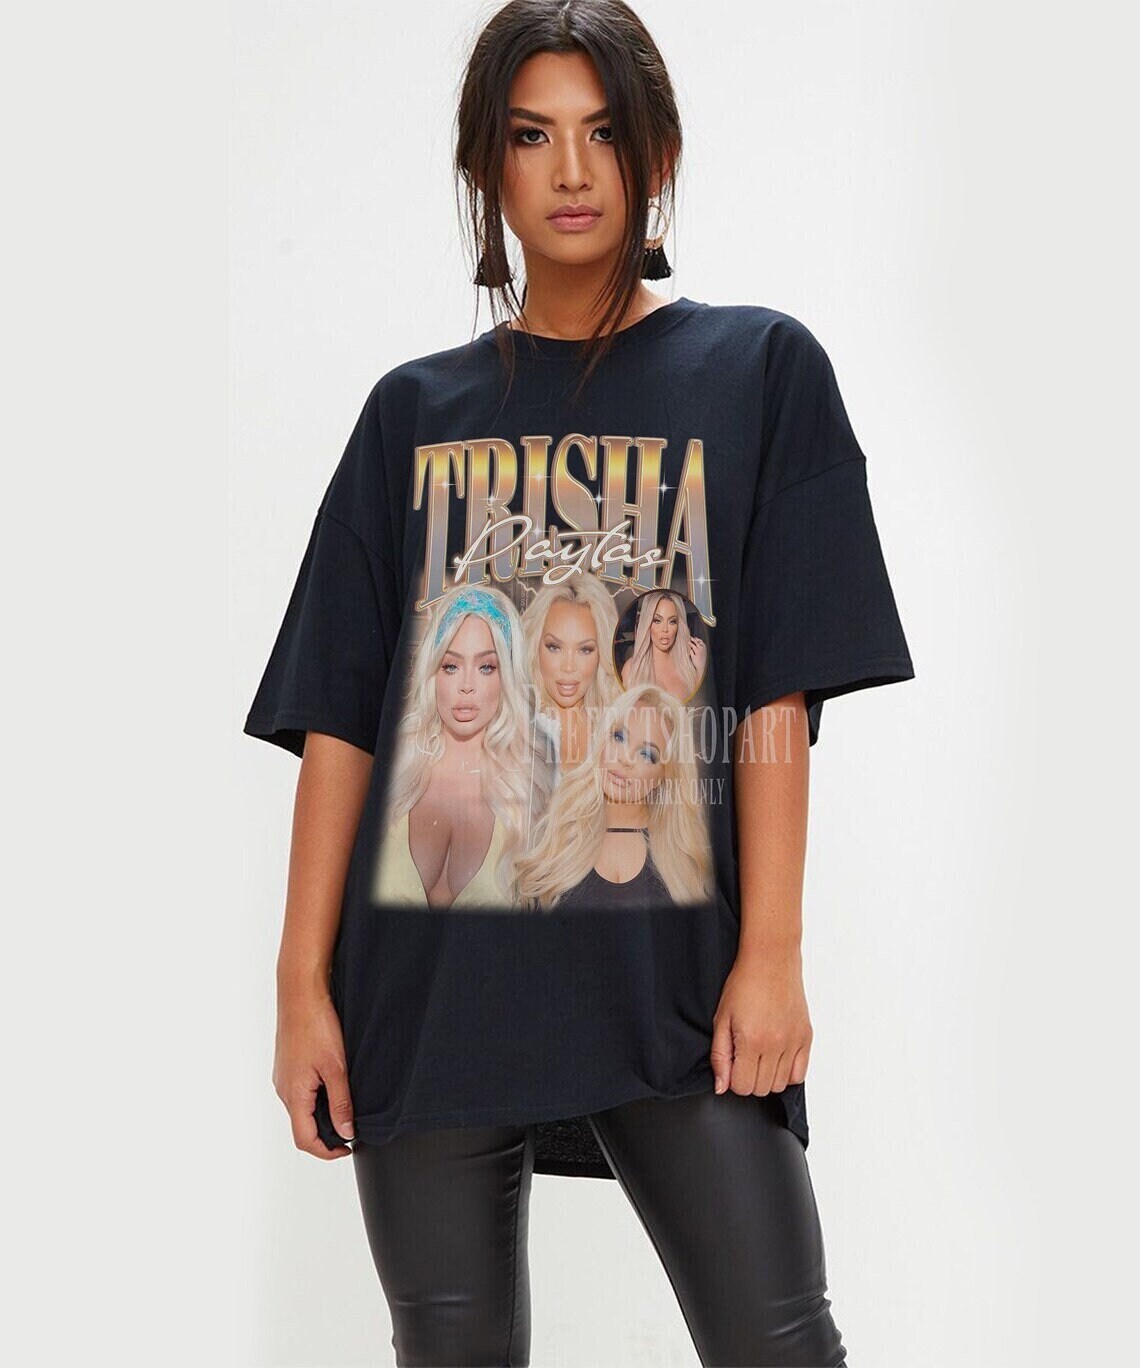 Trisha Paytas Trisha Paytas Shirt Trisha Paytas Vintage - Etsy